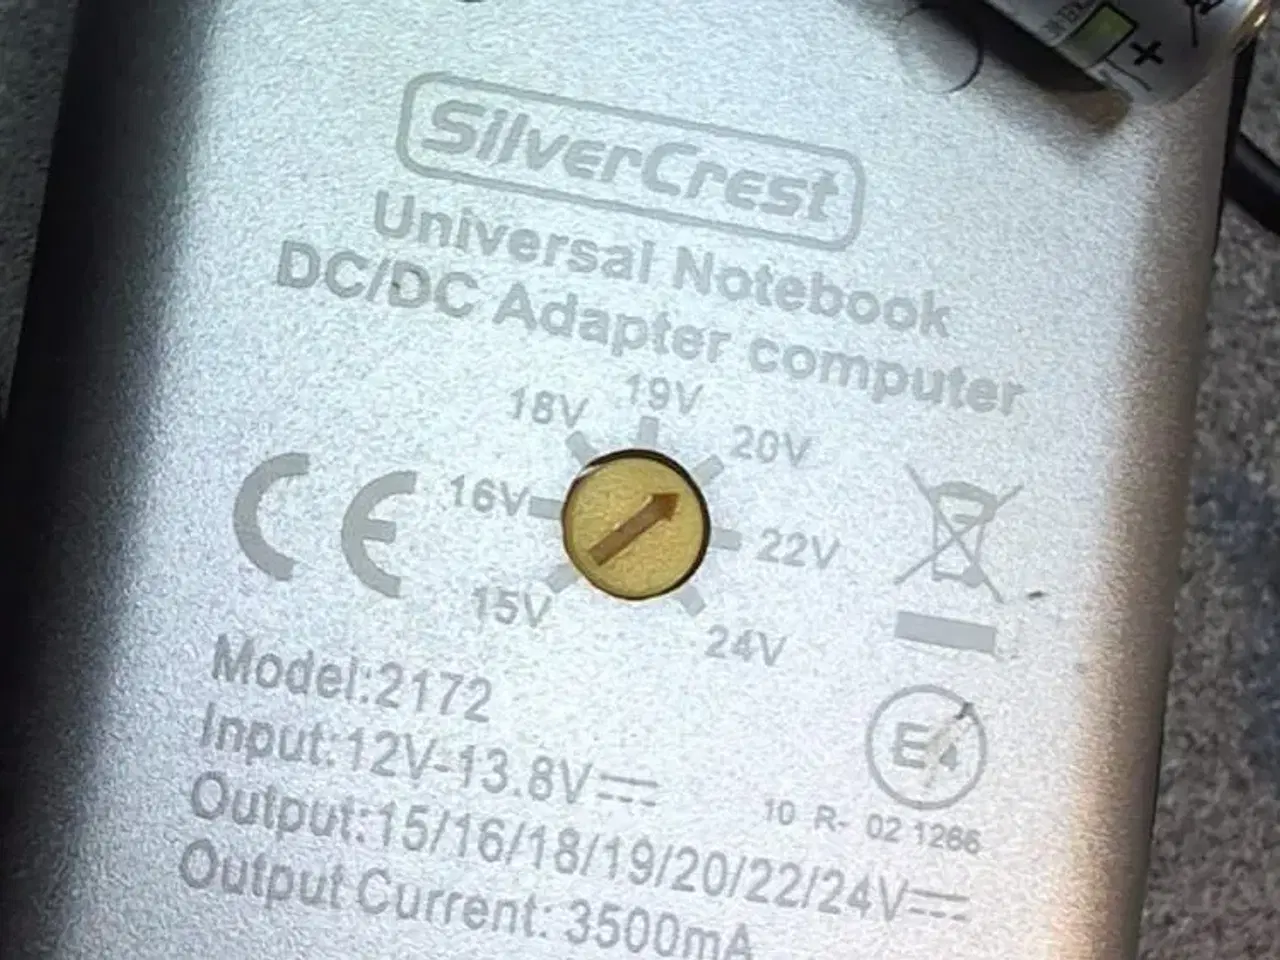 Billede 2 - SilverCrest Universal Notebook DC/DC Adapter